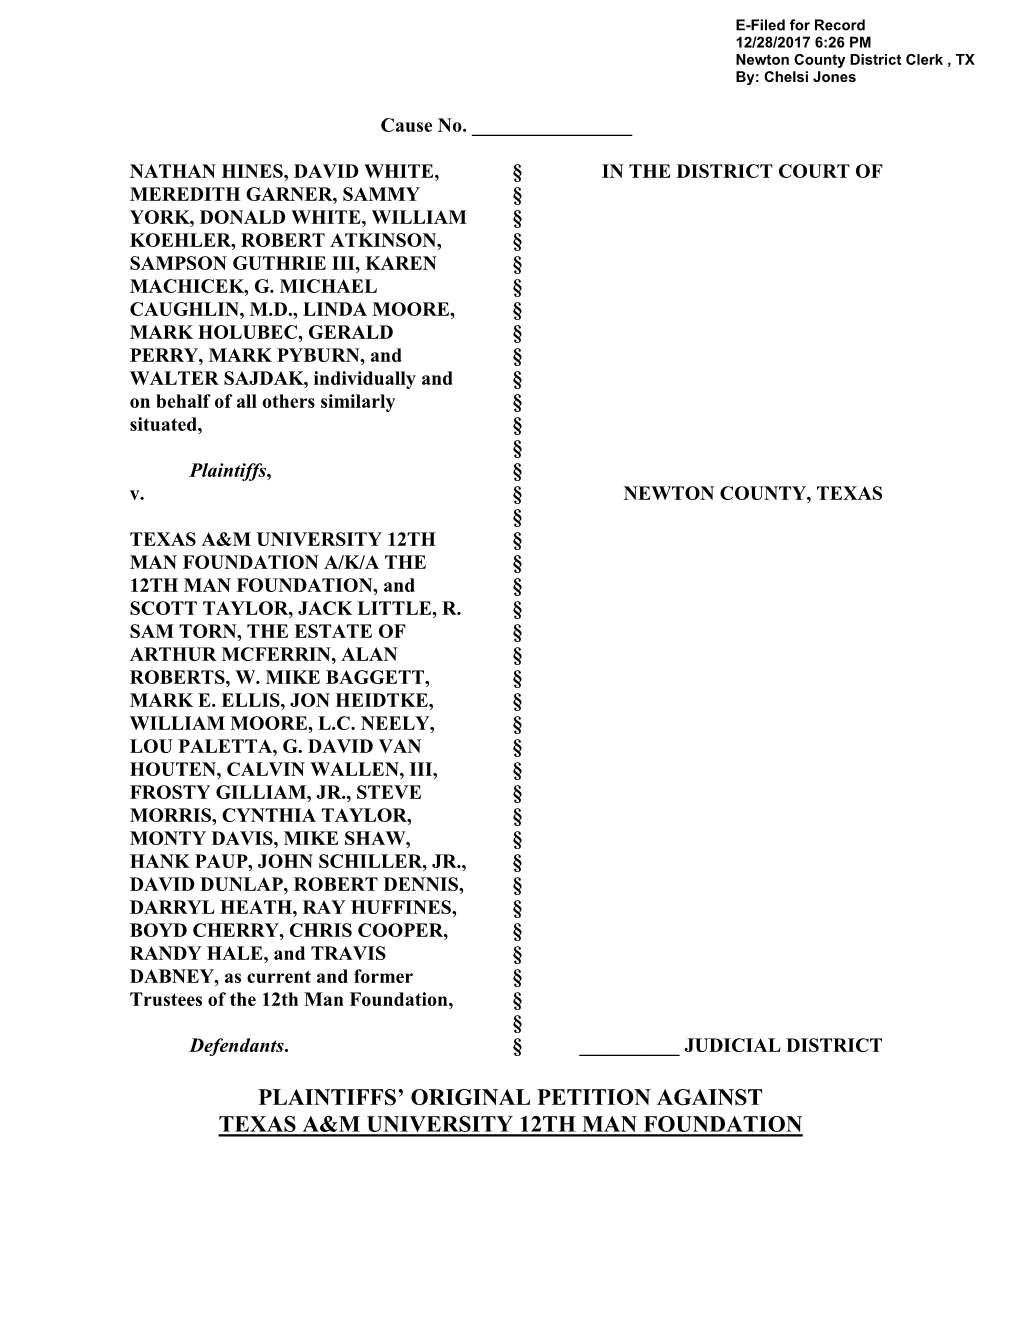 Plaintiffs' Original Petition Against Texas A&M